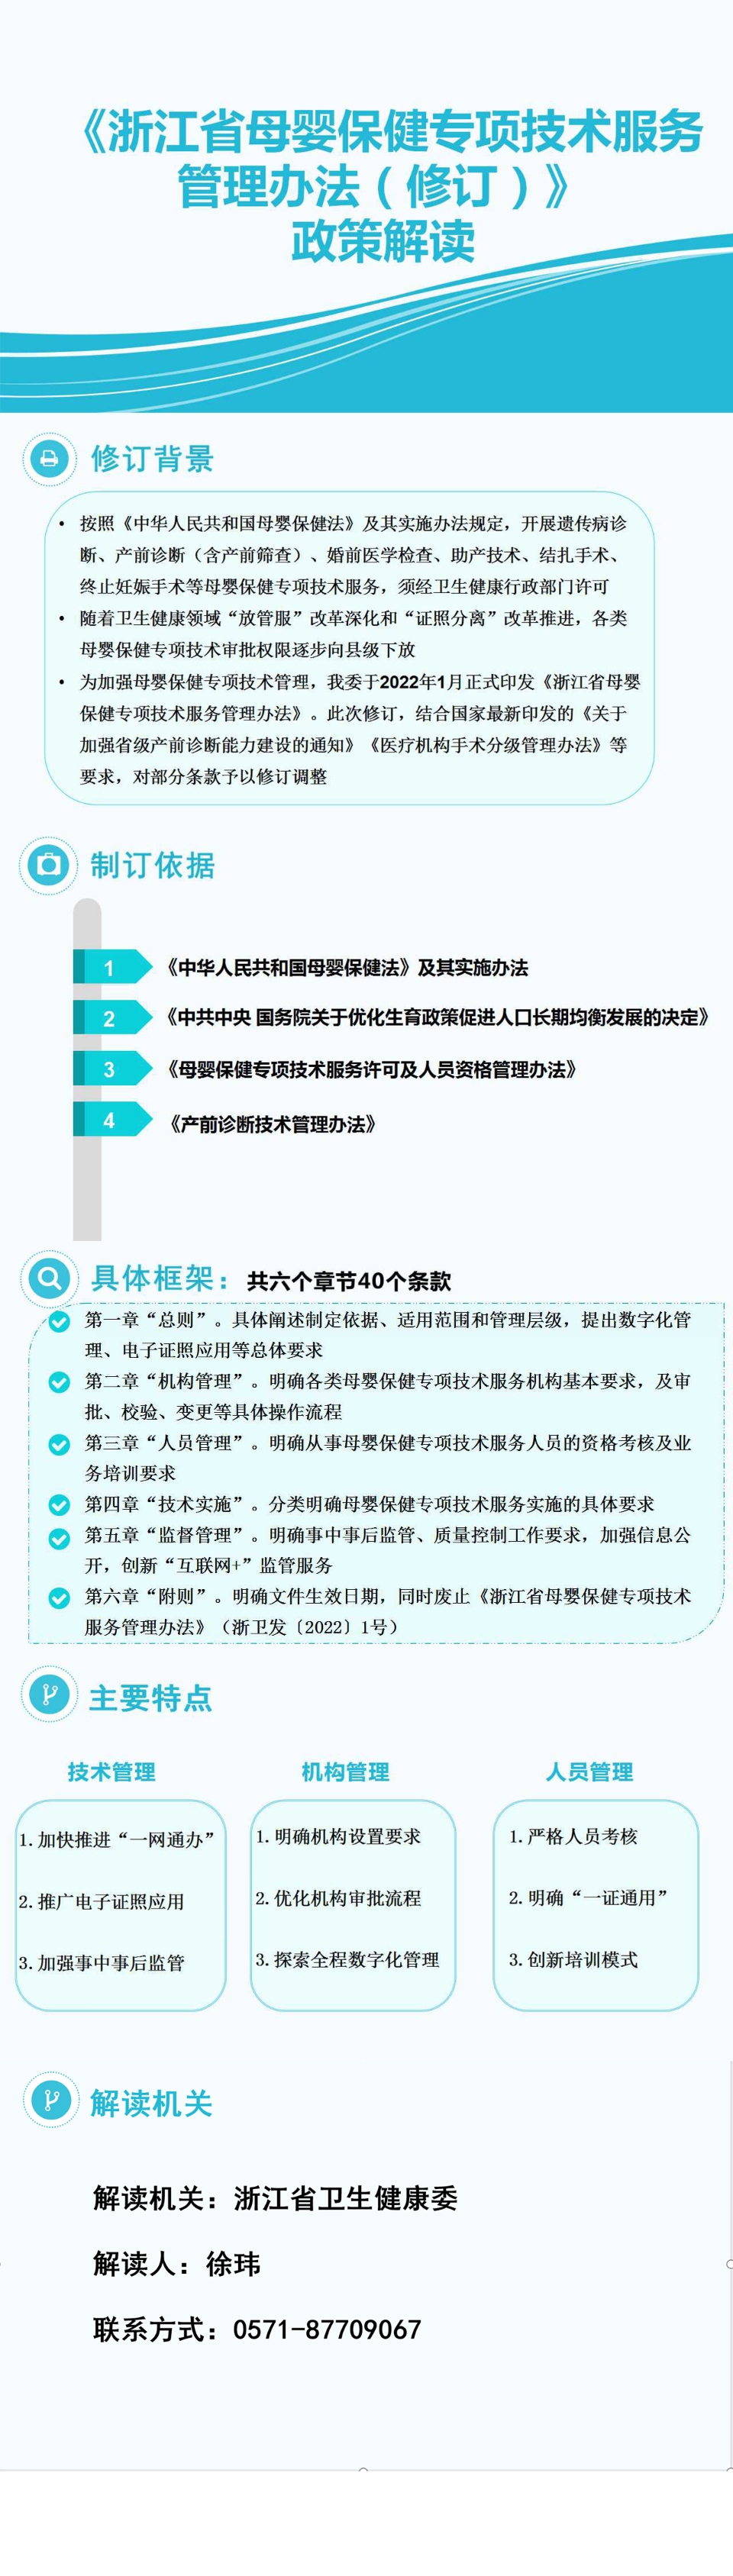 图解：《浙江省母婴保健专项技术服务管理办法》.jpg